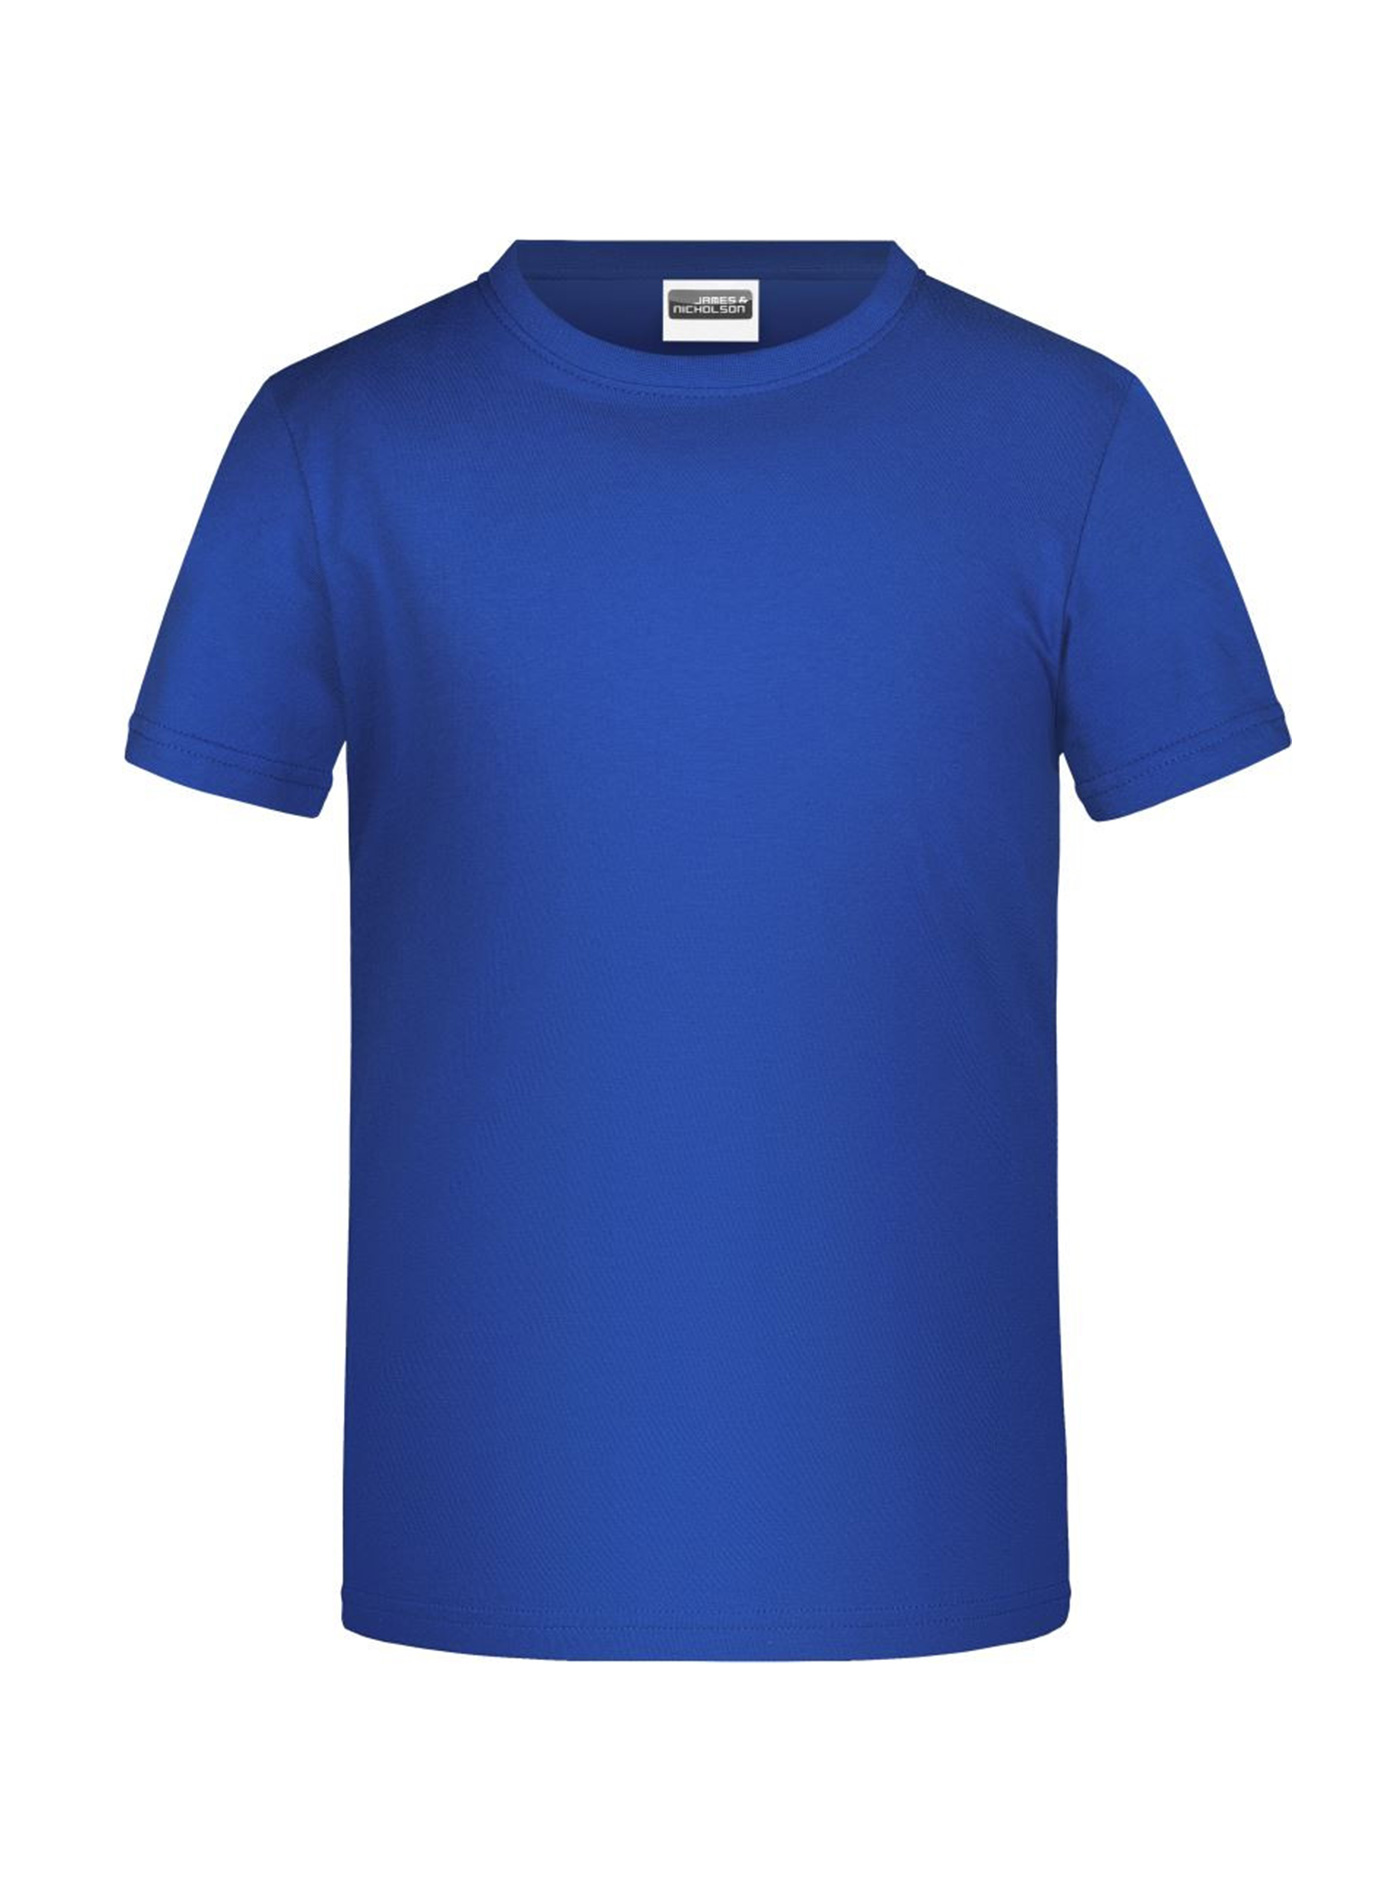 Chlapecké tričko James & Nicholson - Královská modrá L